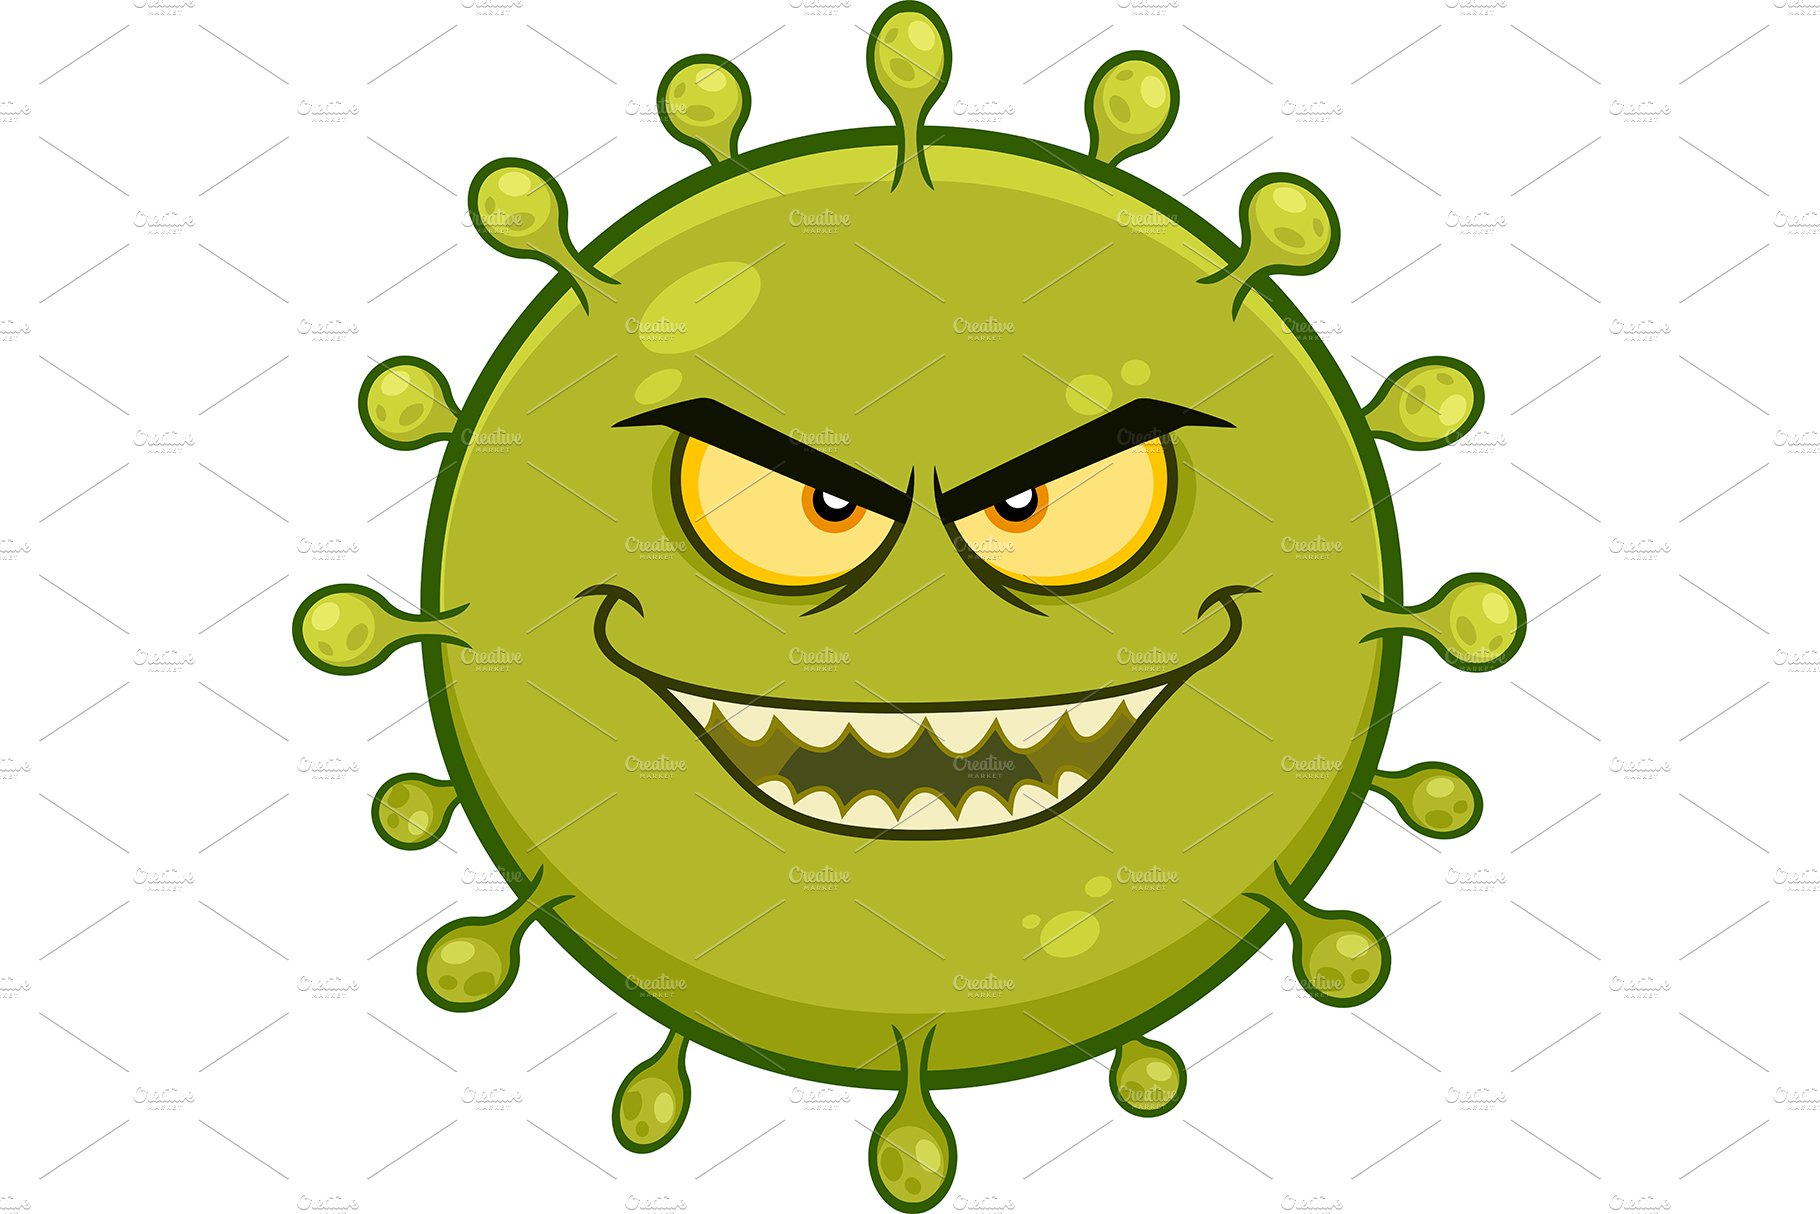 Coronavirus Cartoon Character cover image.